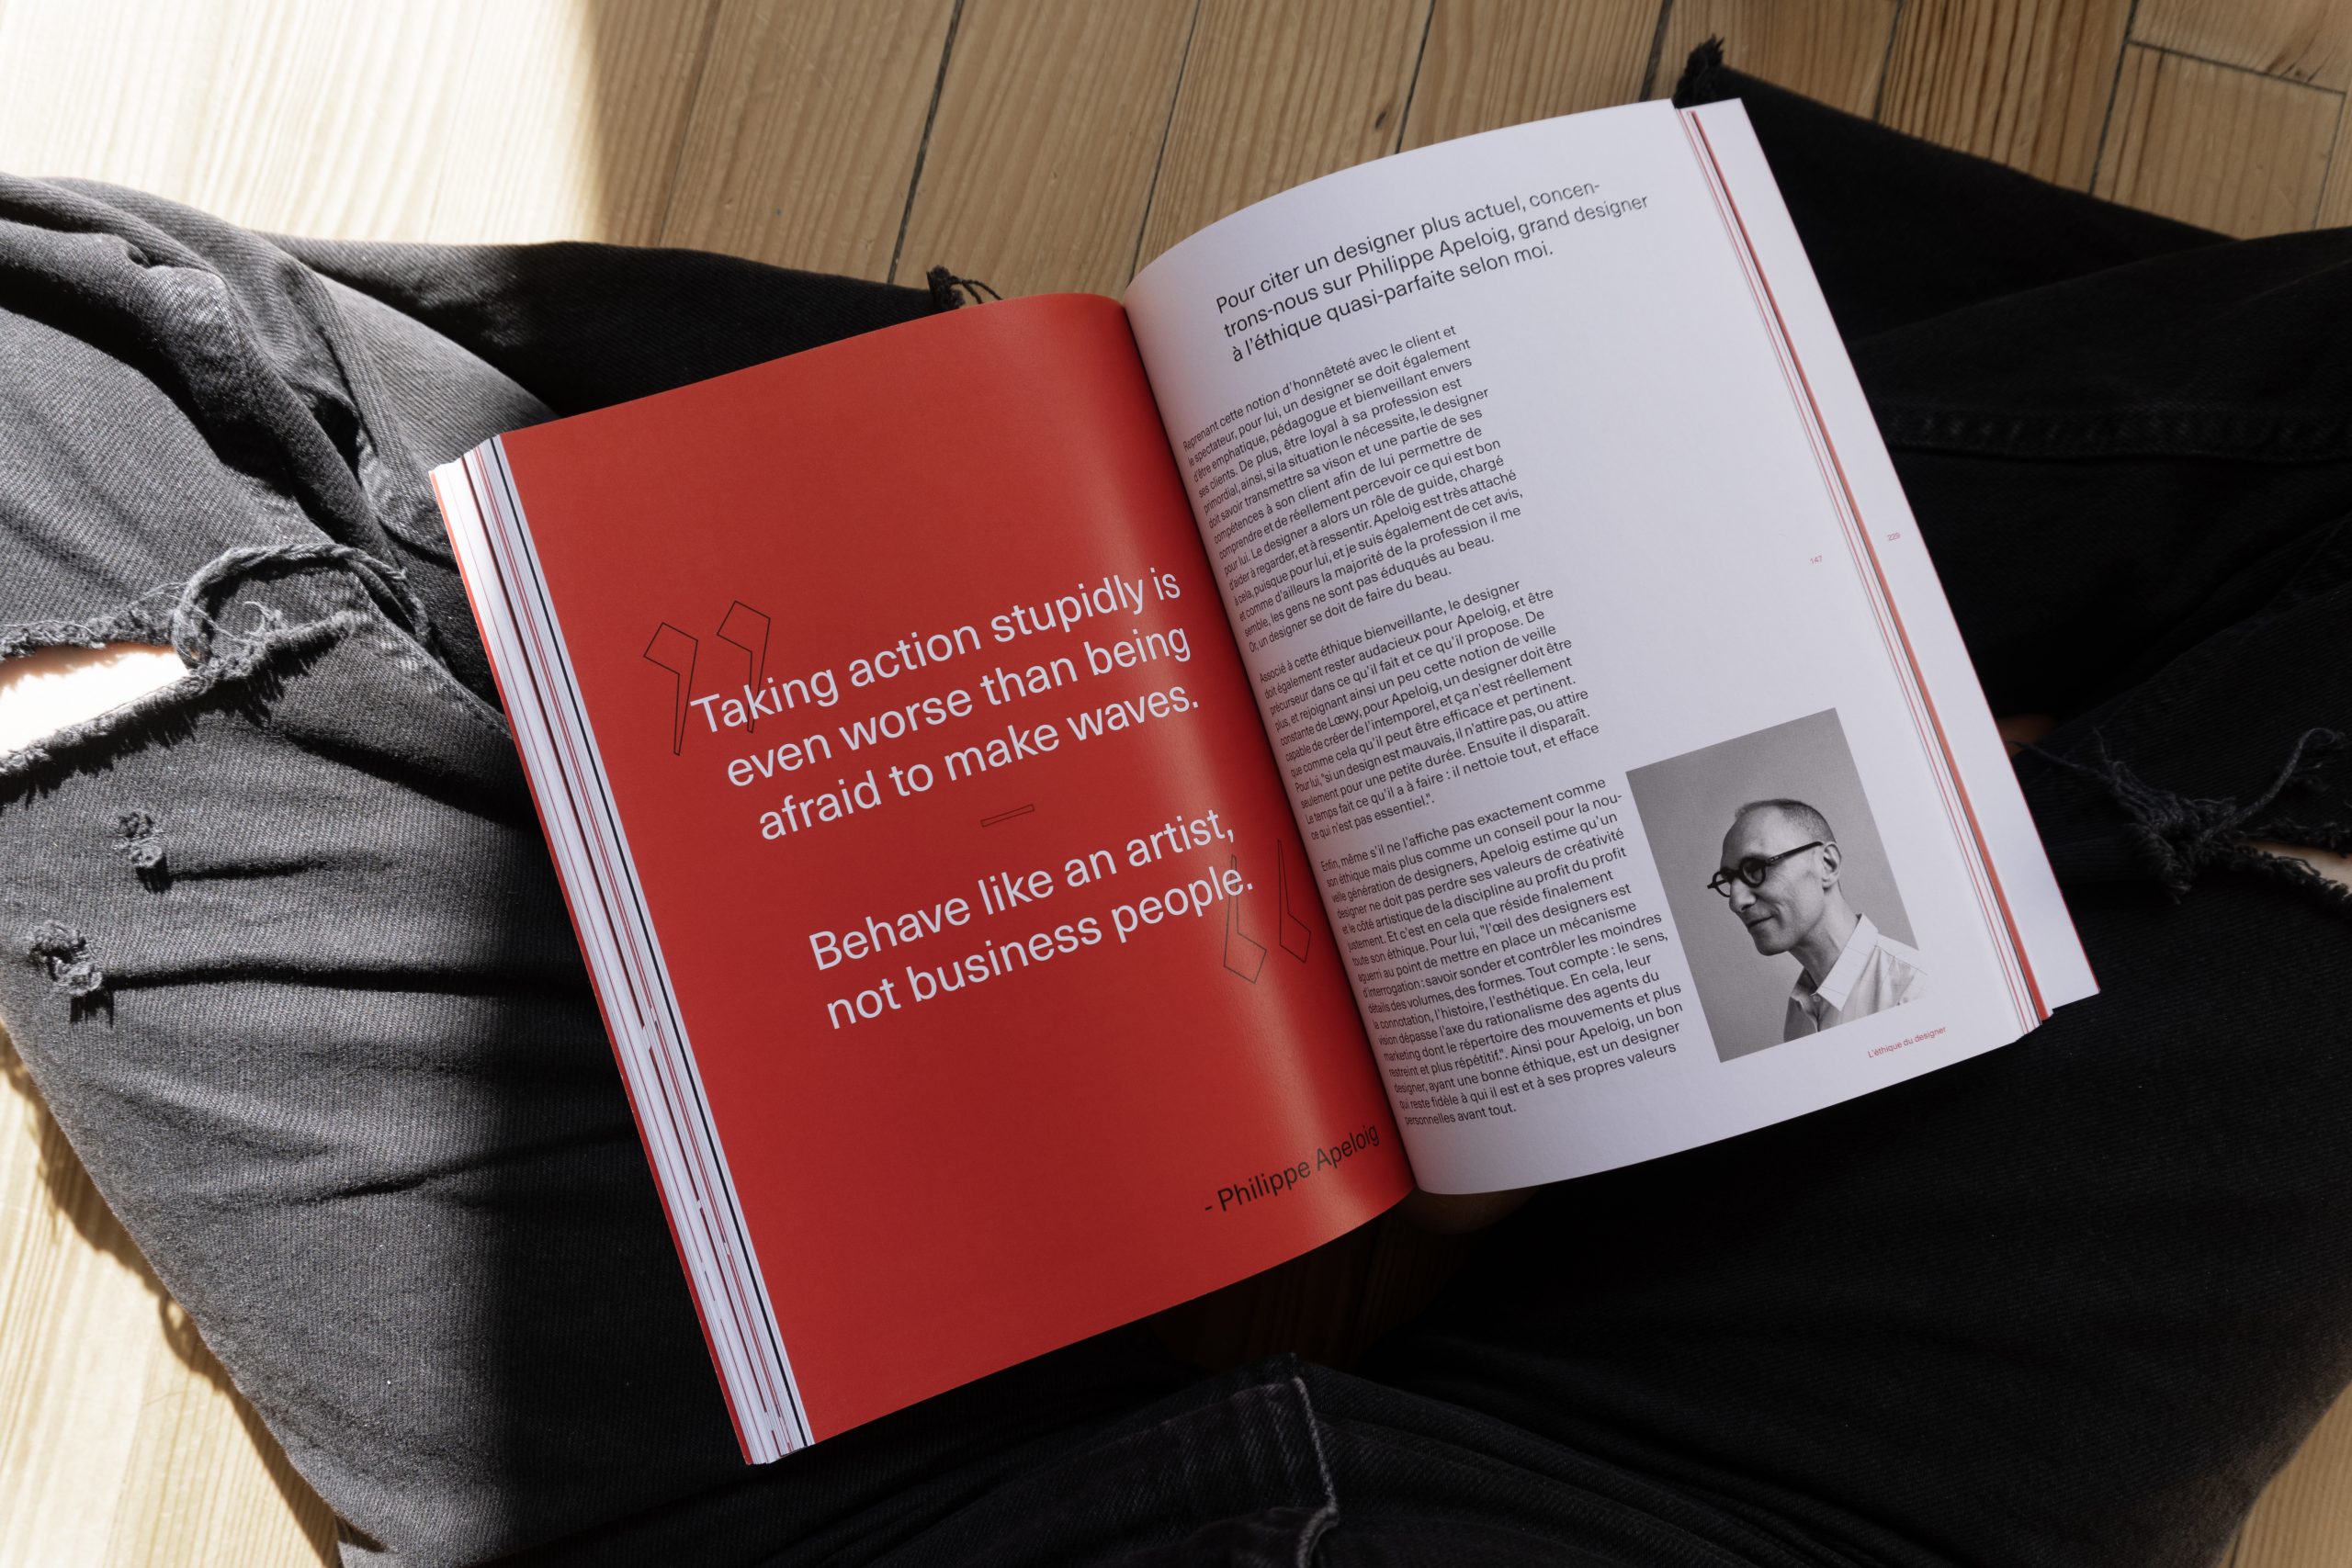 Visuel de l'intérieur du livre montrant une citation et une photographie de Philippe Apeloig dans le chapitre sur l'éthique du designer.